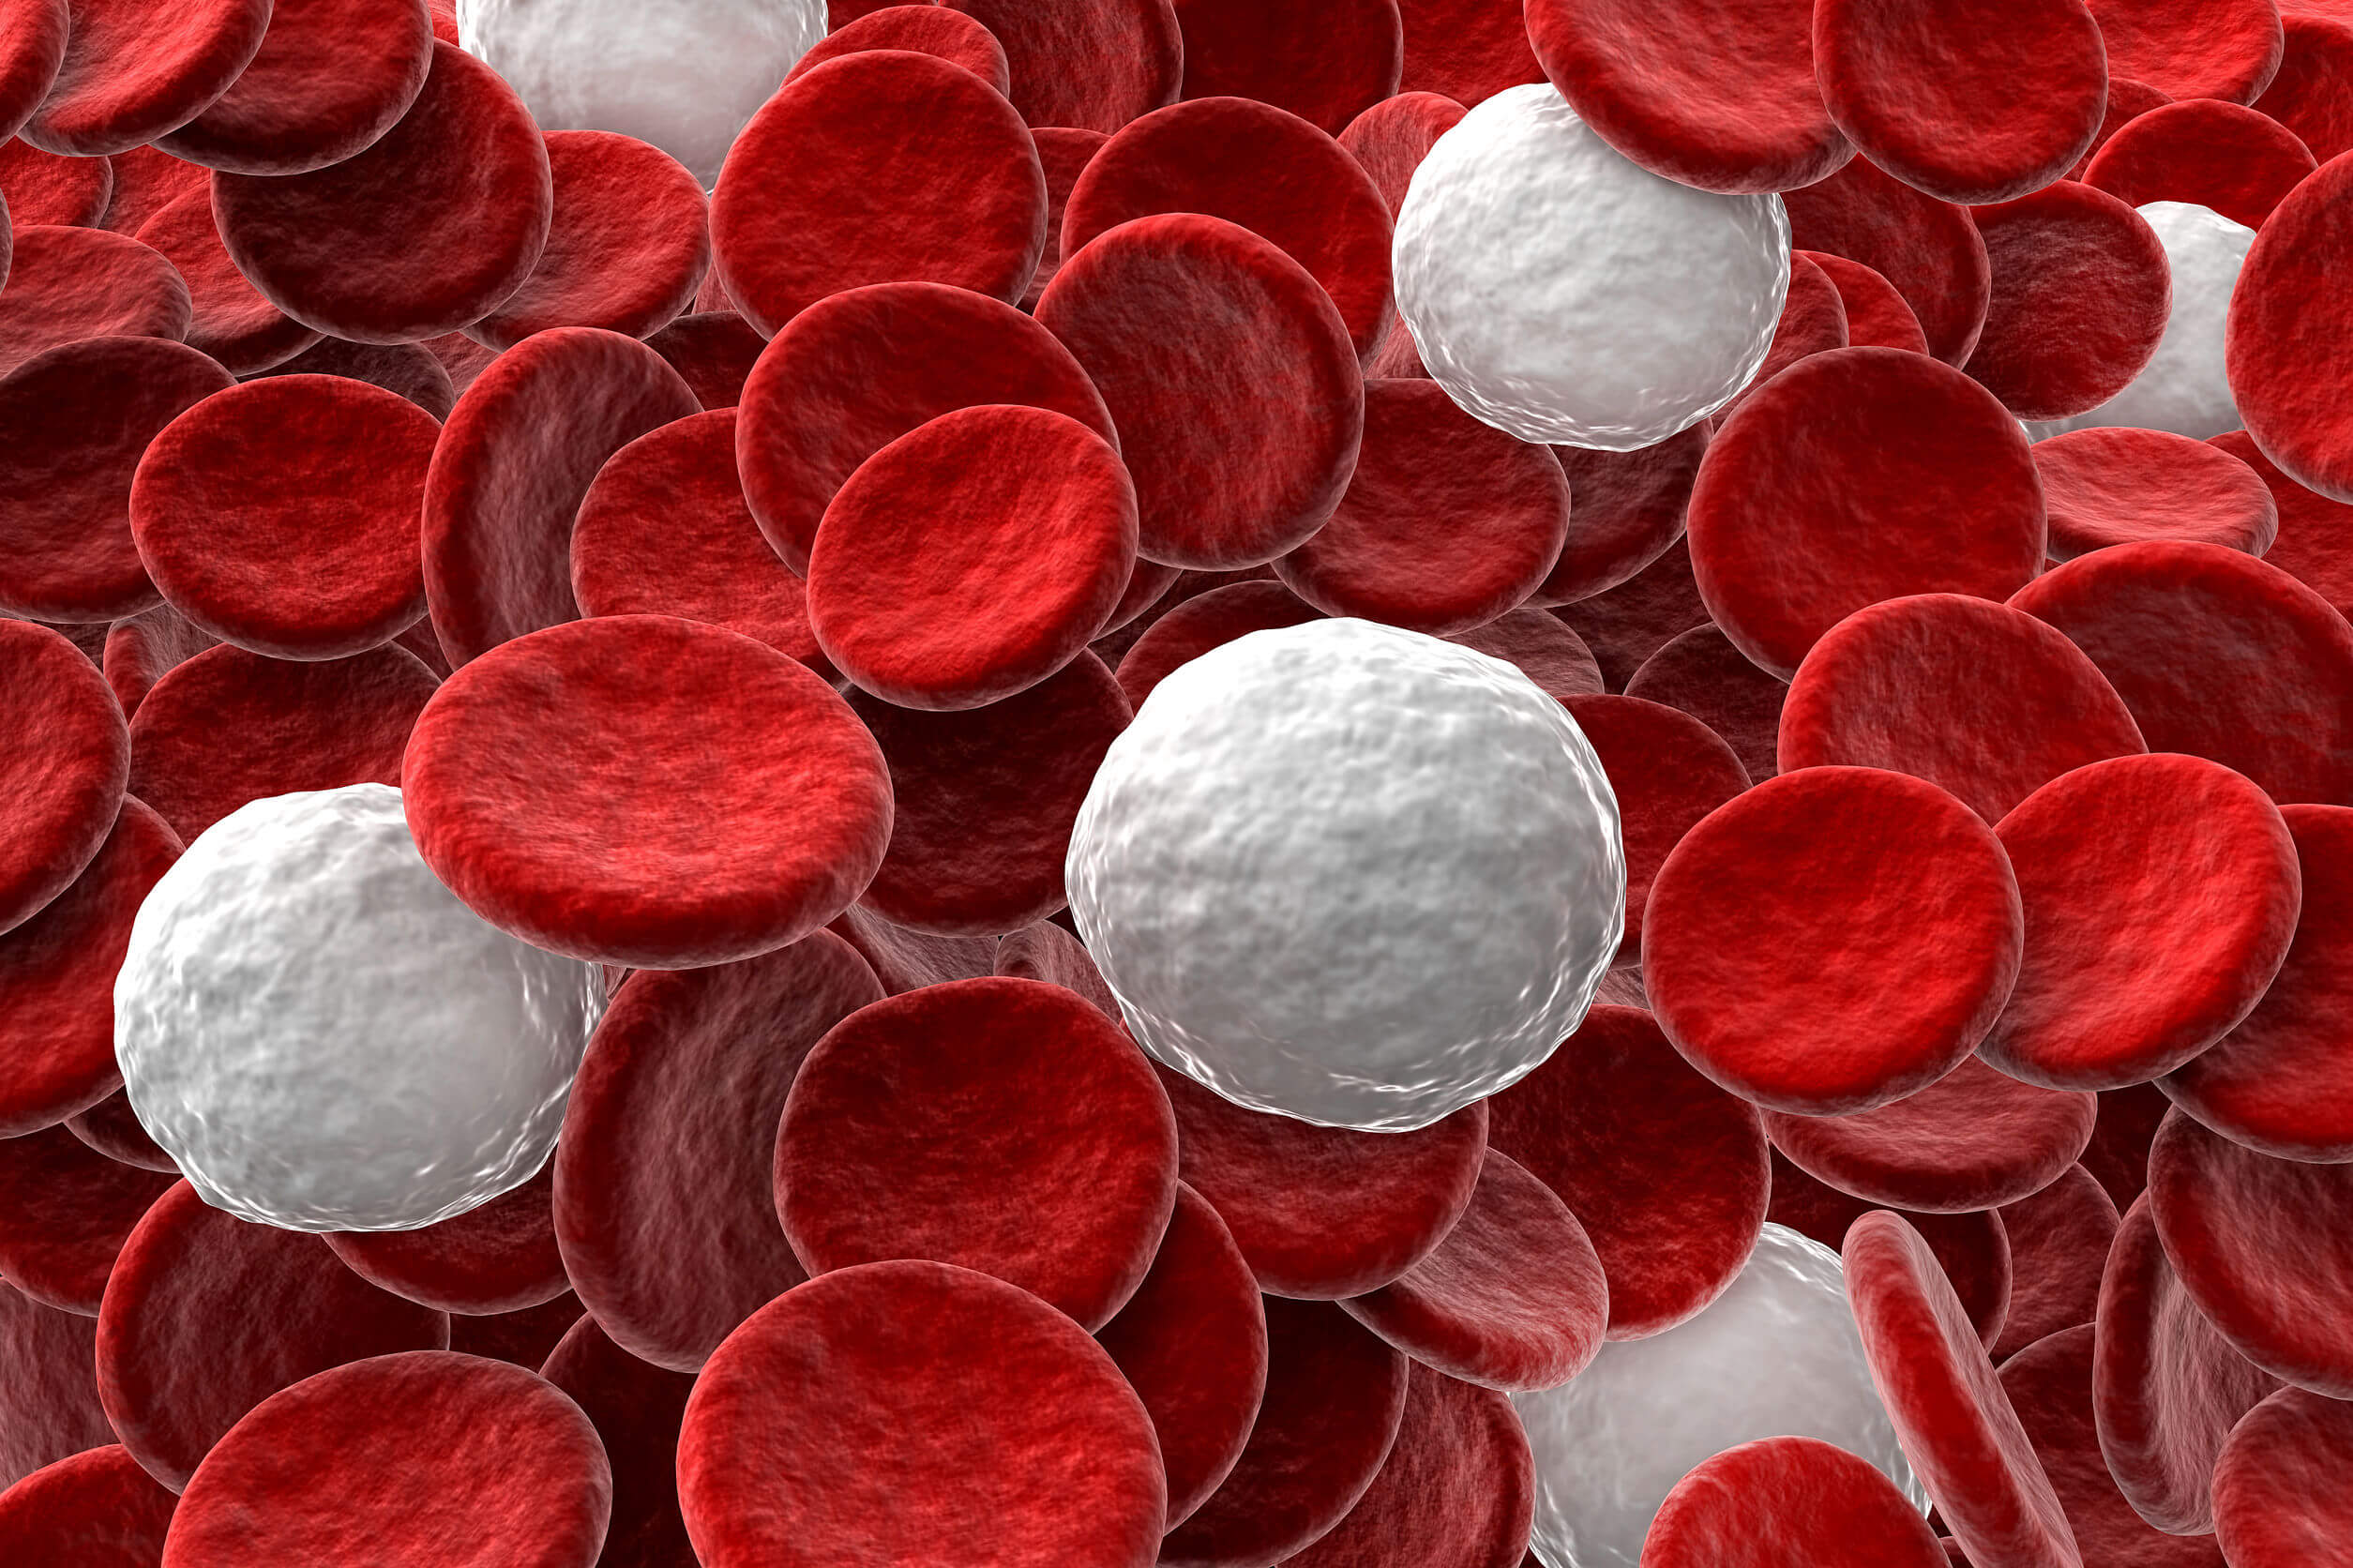 O maior número de células Natural Killer é encontrado no sangue.